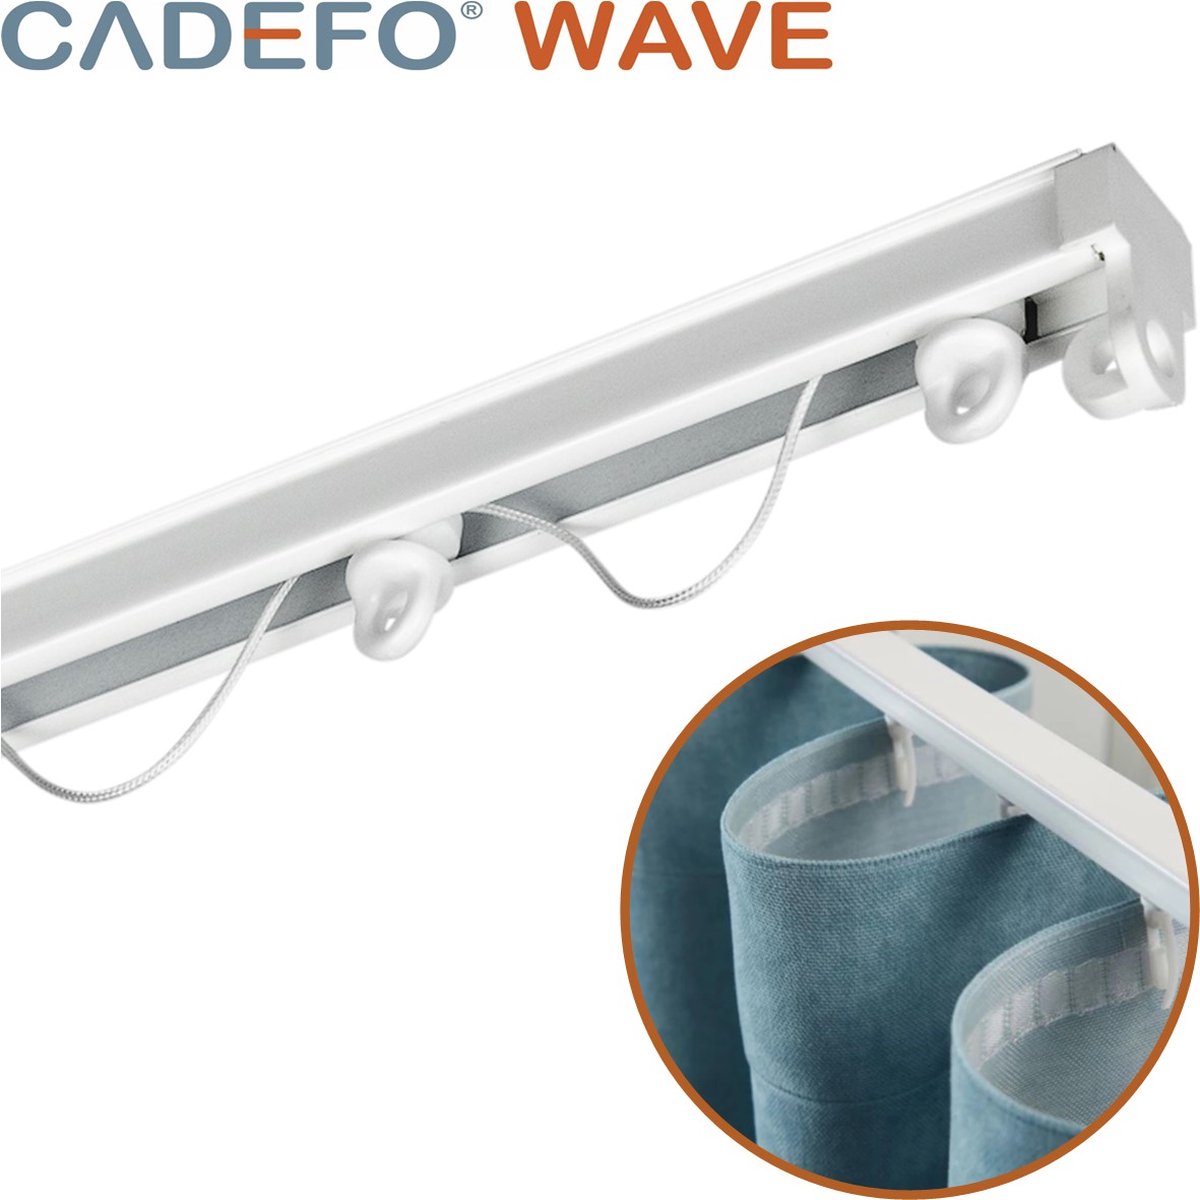 CADEFO WAVE (151 - 200 cm) Gordijnrails - Compleet op maat! - UIT 1 STUK - Leverbaar tot 6 meter - Plafondbevestiging - Lengte 183 cm